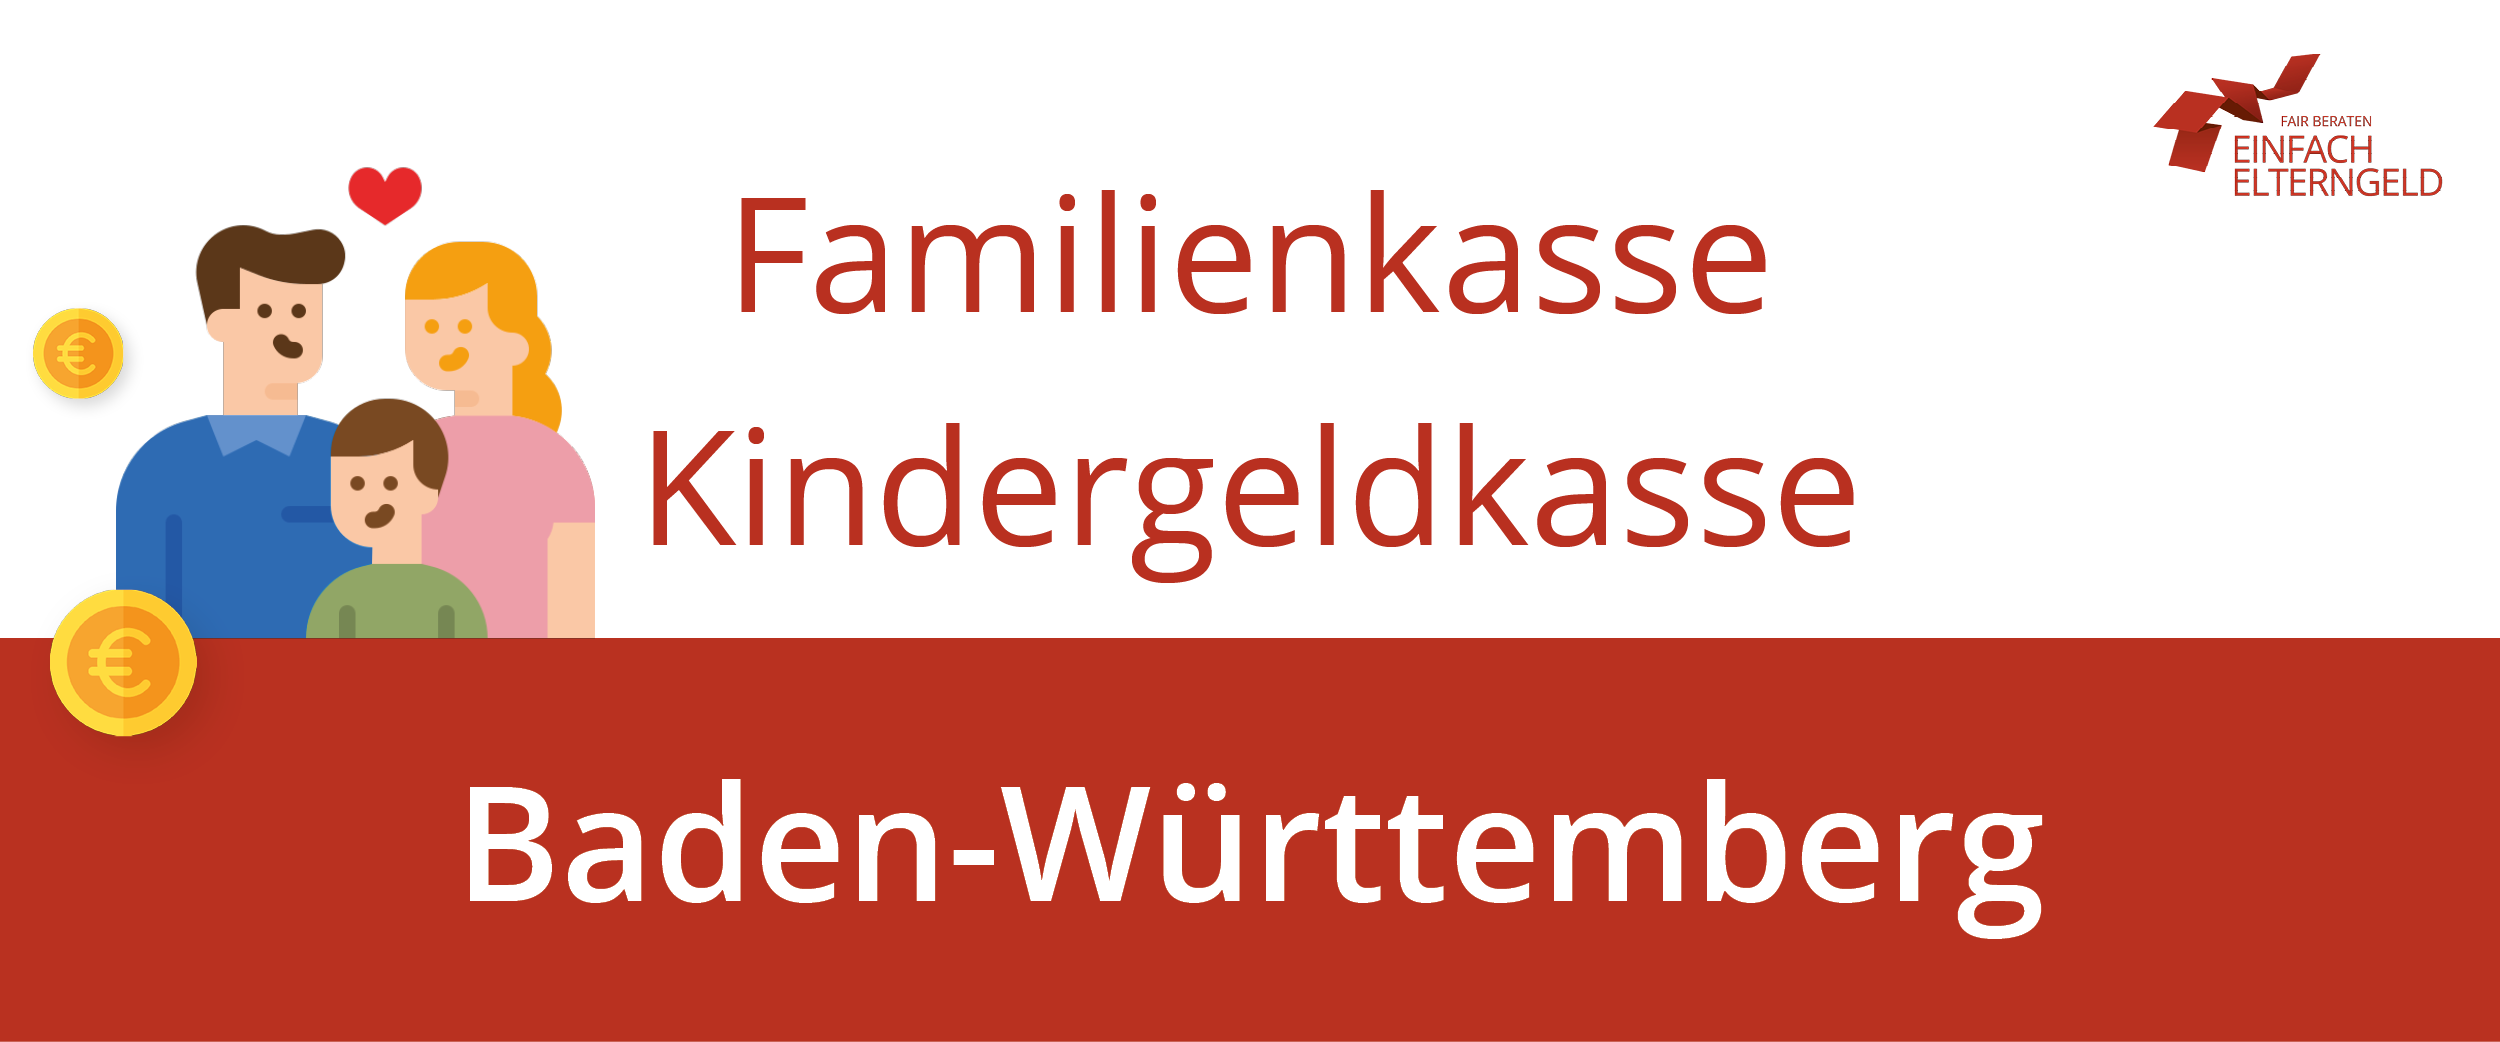 Familienkasse Kindergeldkasse Baden-Württemberg - Wir stellen Ihnen alle Standorte in Baden-Württemberg vor.